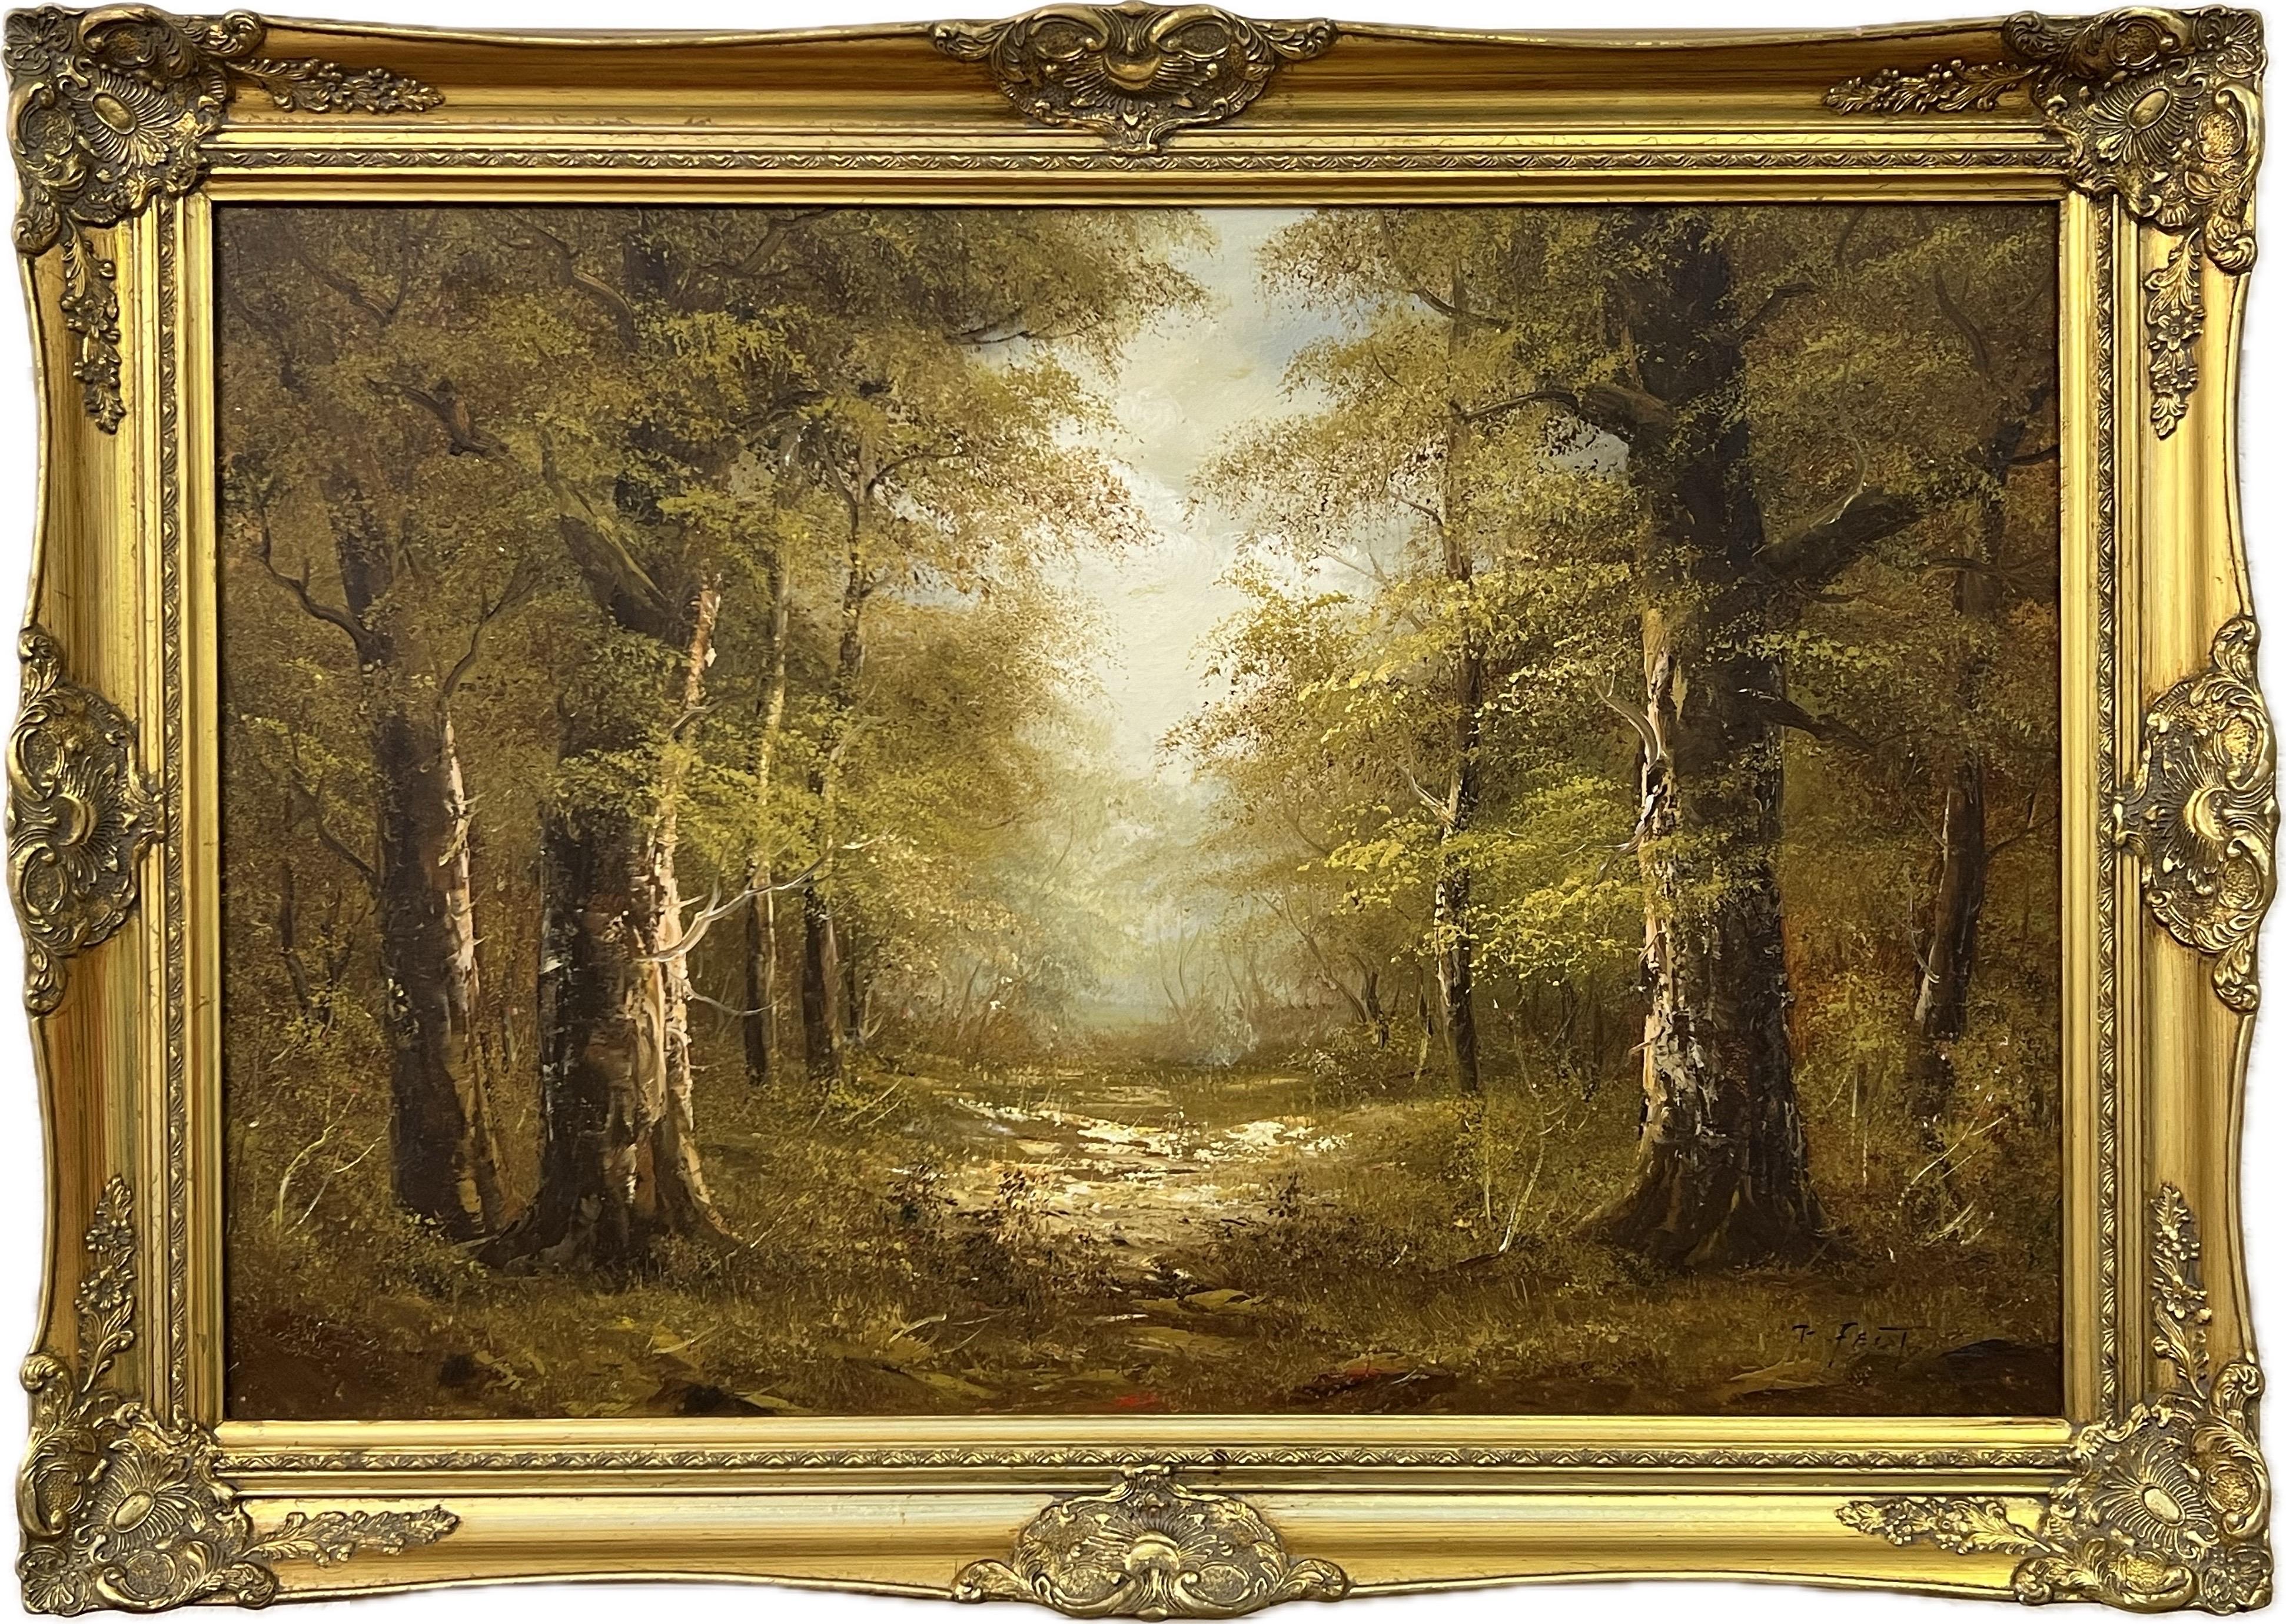 Atmosphärisches impressionistisches Gemälde eines dichten Waldes in europäischem Wald